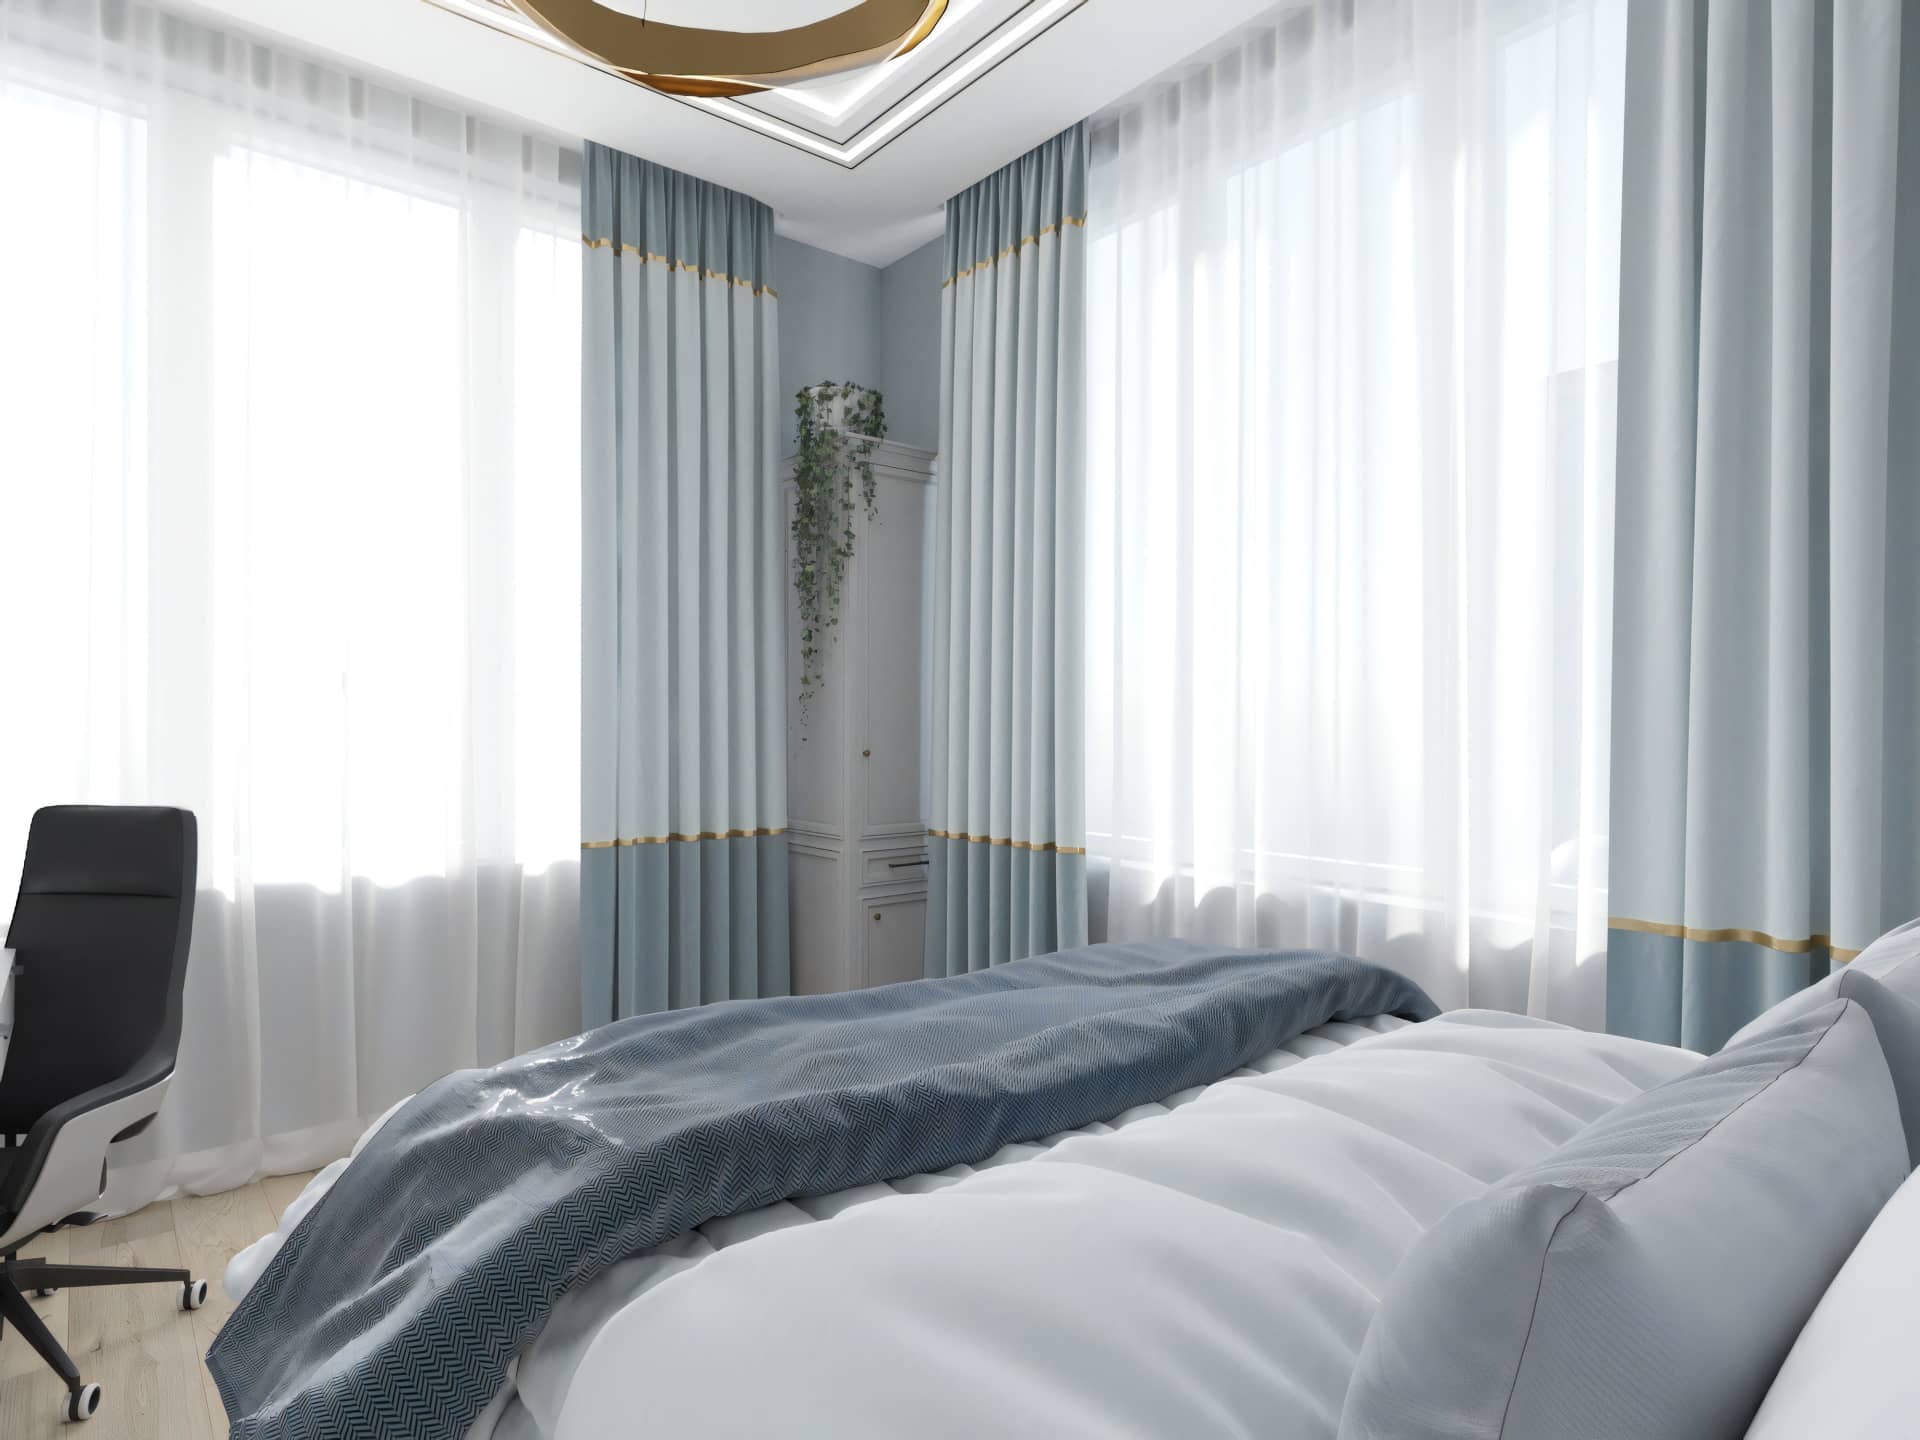 Оформление интерьера спальни в стиле ар-деко. Фото № 63745.